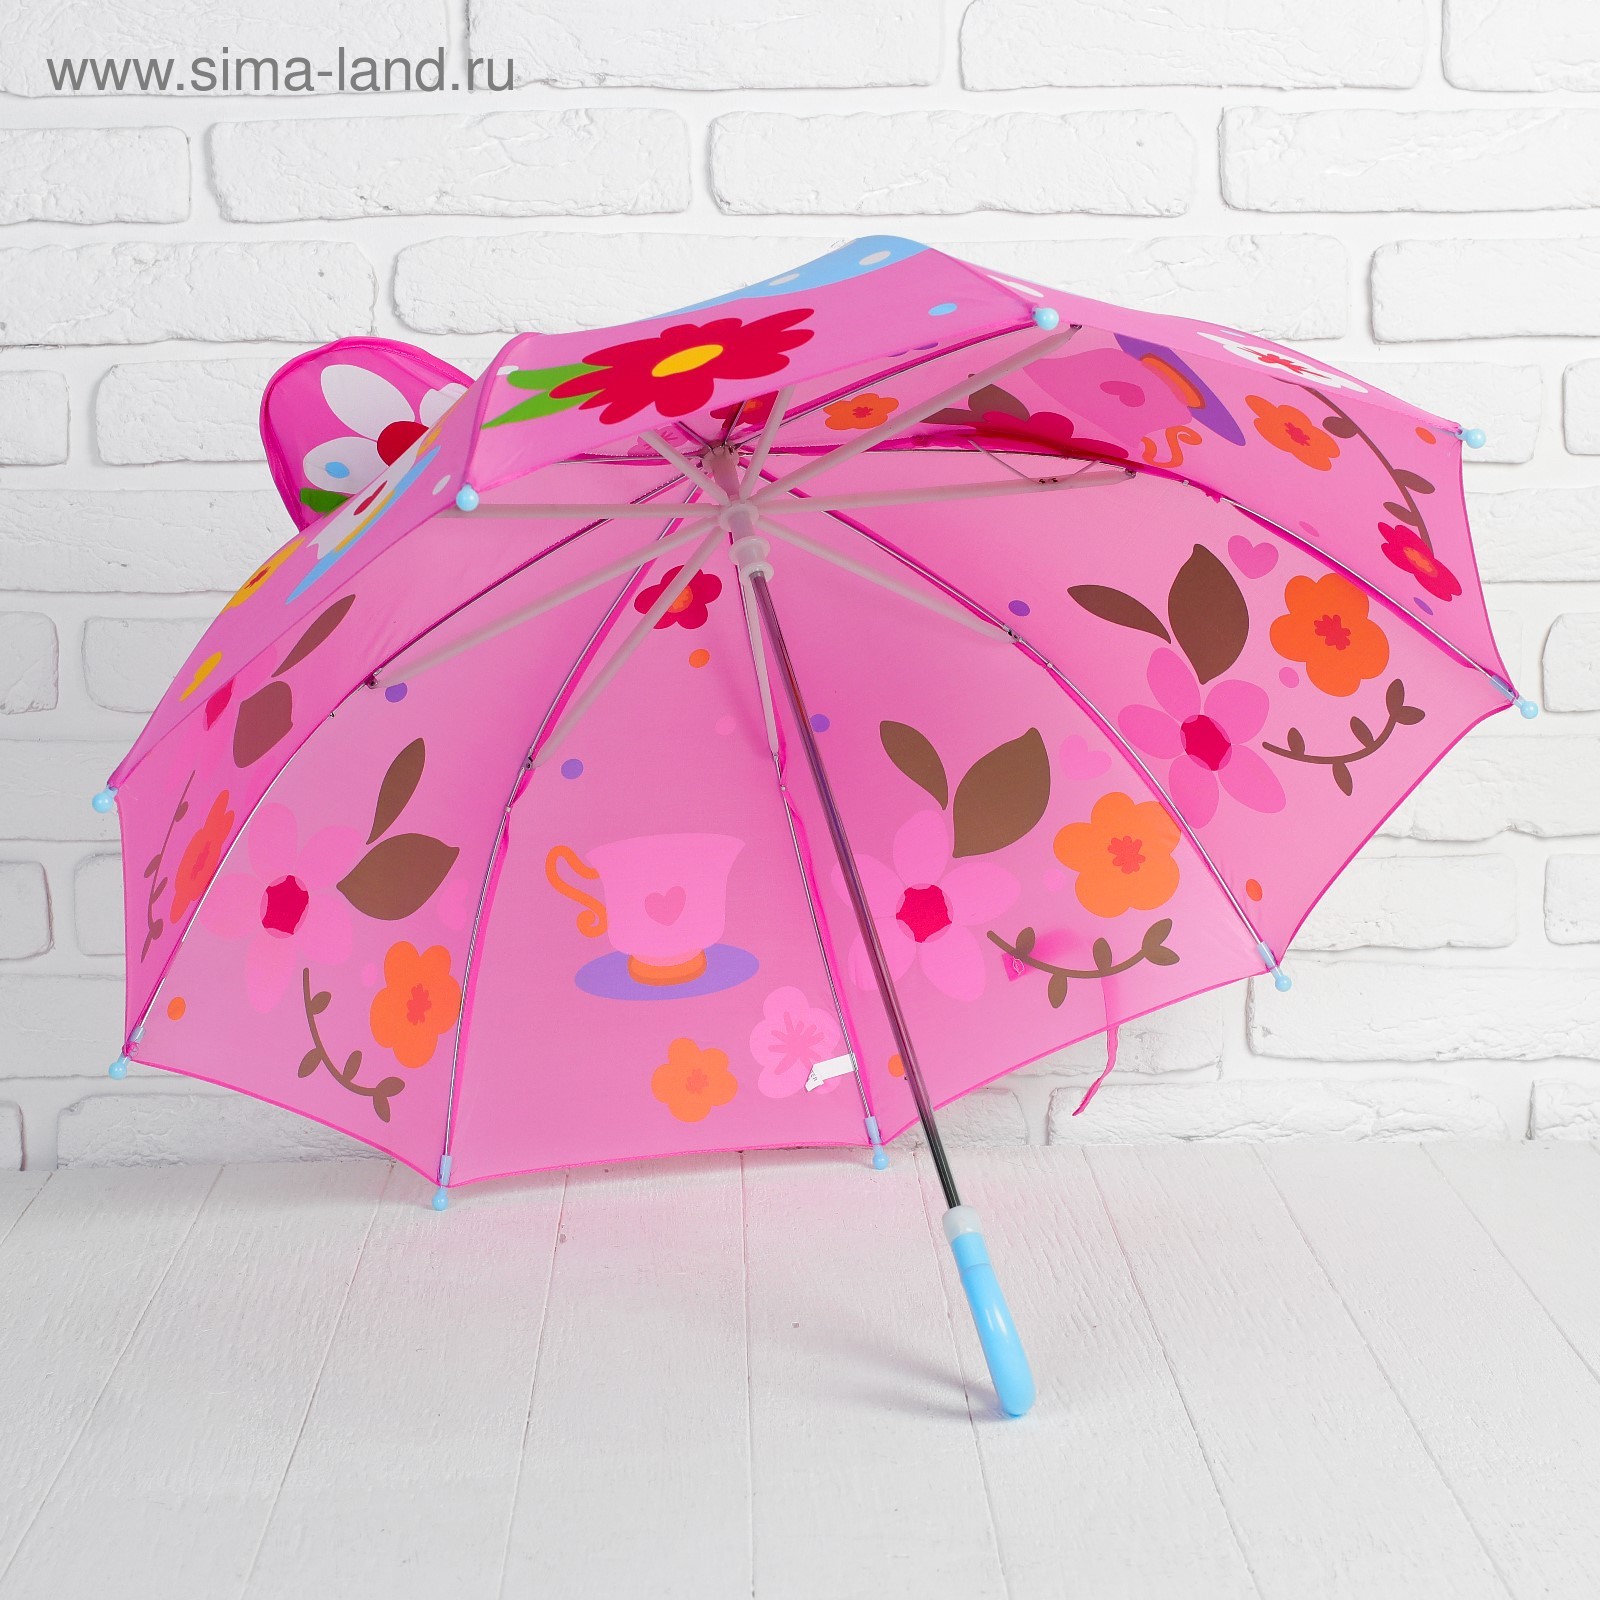 Зонтик надо. Детские зонты. Зонтик для детей. Детский зонтик для девочки. Детский зонт красивый.